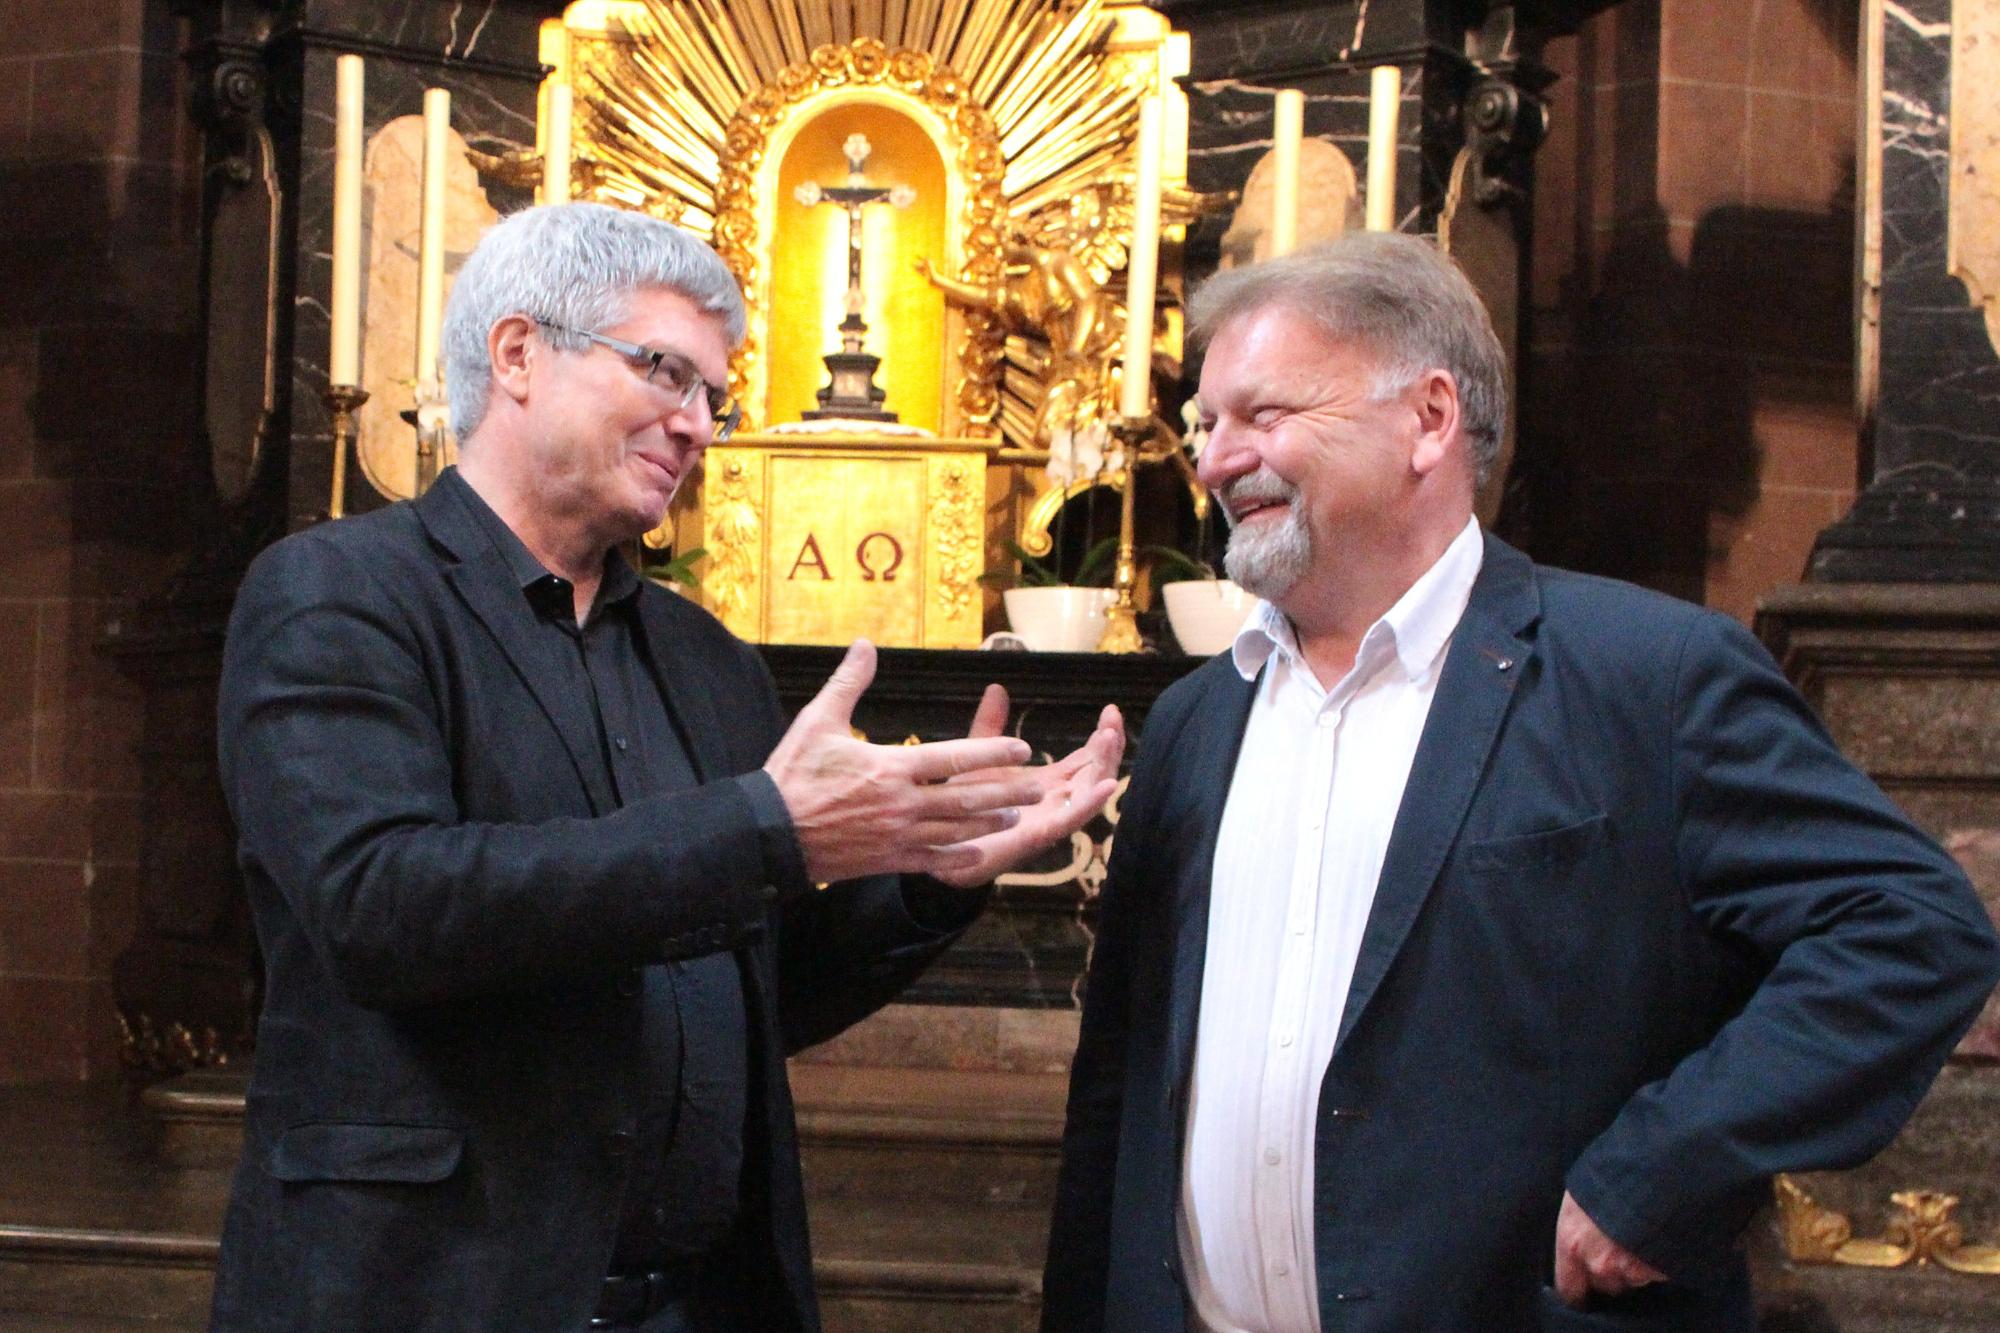 Thomas Klumb (rechts) im Mai 2018 bei der Vorstellung des VR-Brillen-Projektes im Wormser Dom zusammen mit Dr. Michael Klein, Leiter des Institutes für Neue Medien Frankfurt, welches das VR-Projekt maßgeblich unterstützt hat.